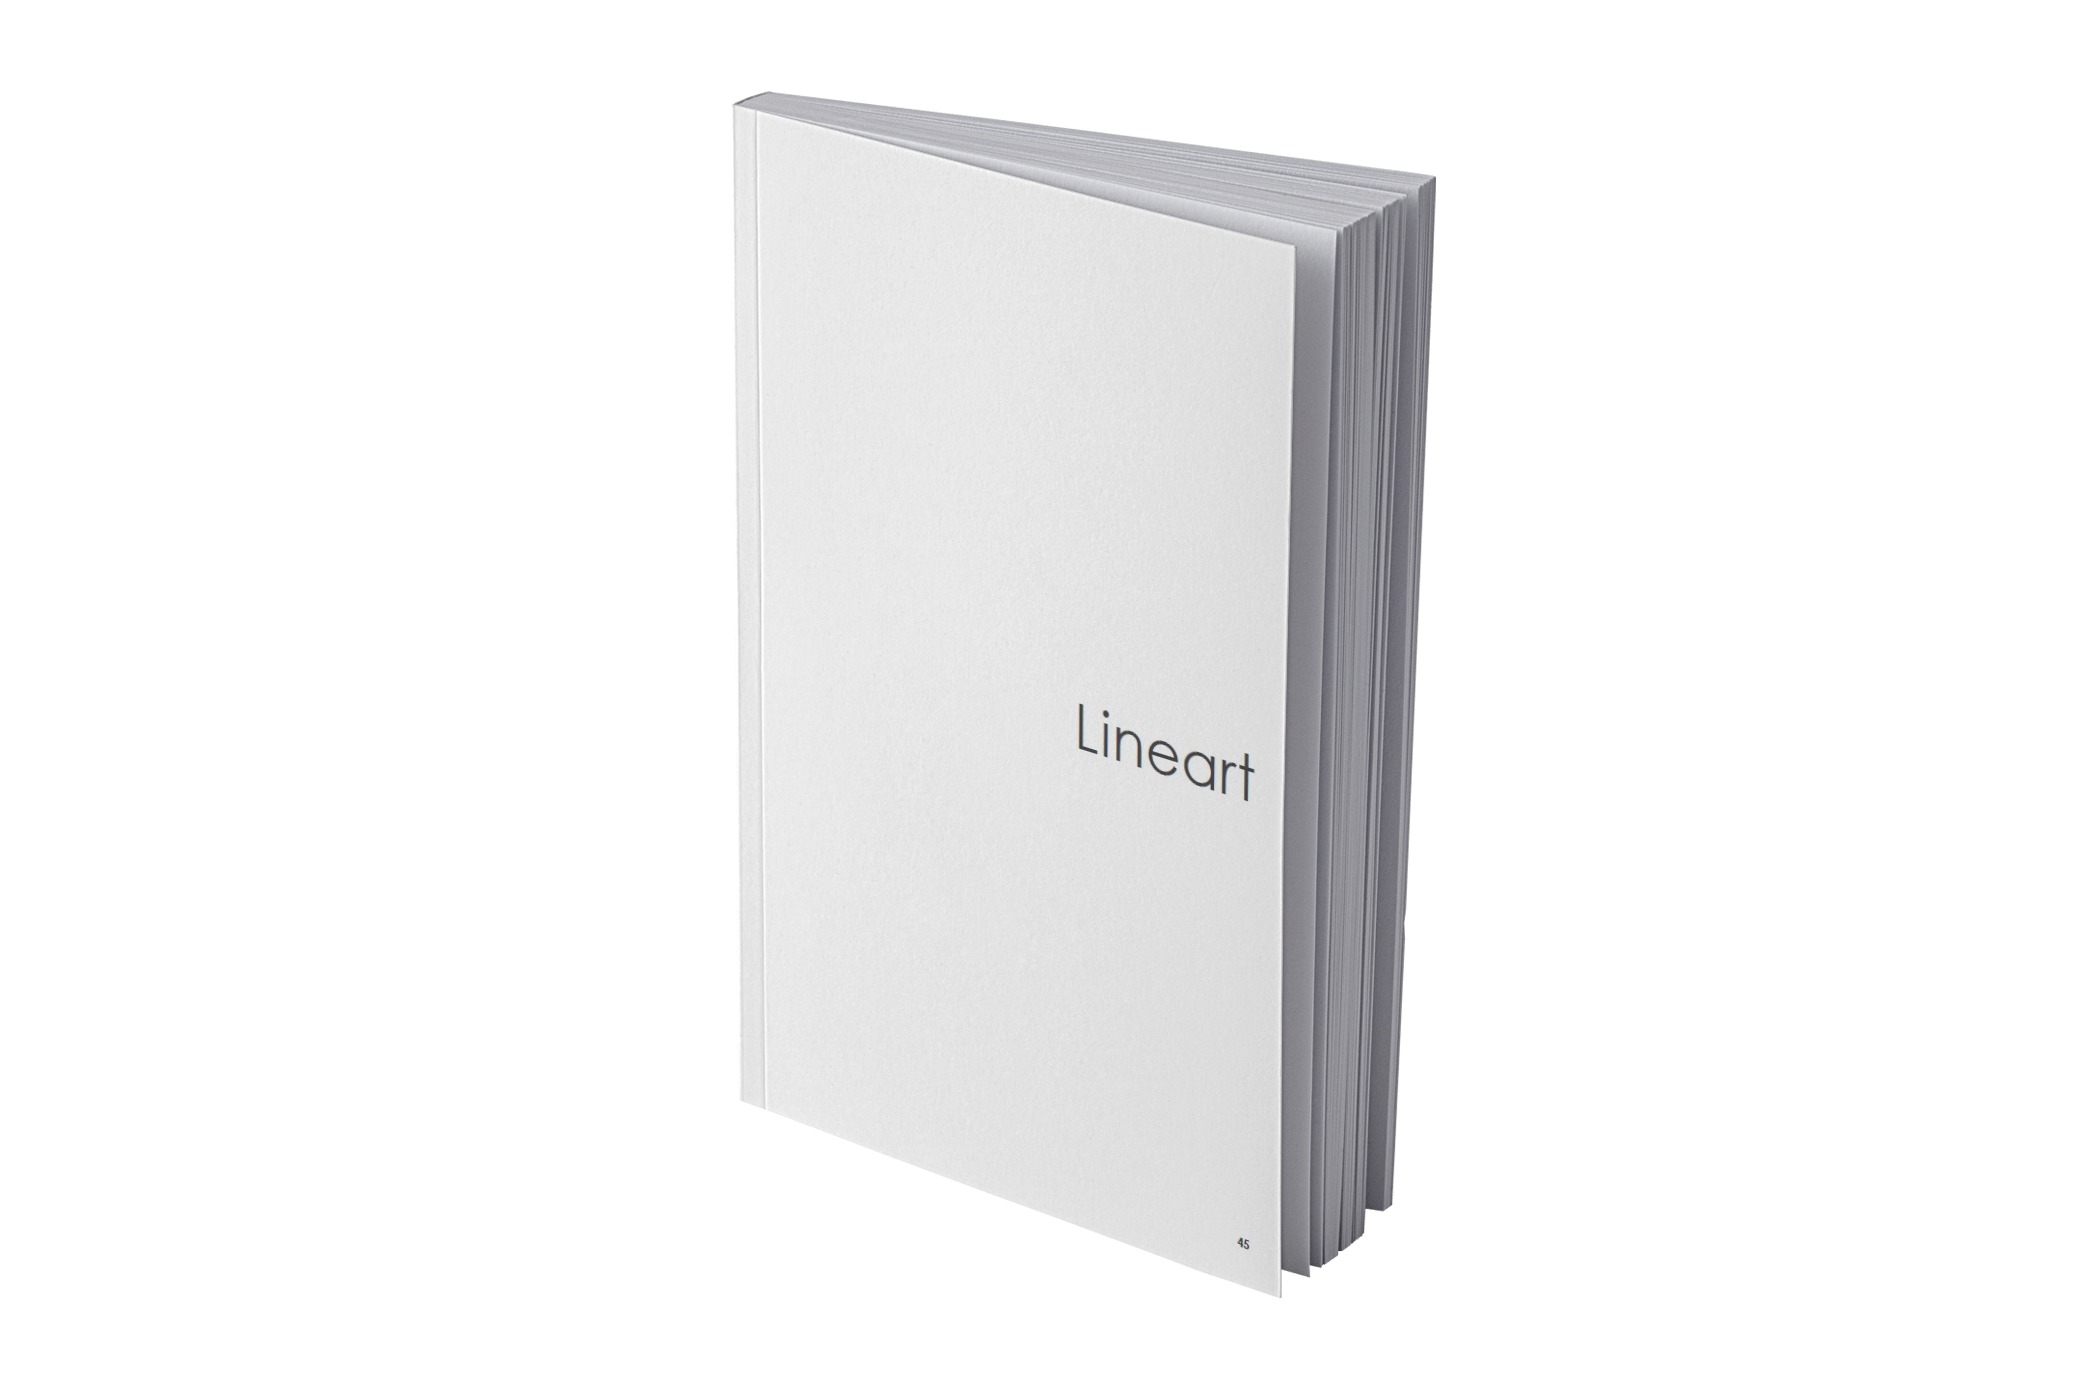 Ikona cennika - książka z napisem Lineart będącym nazwą kolekcji.